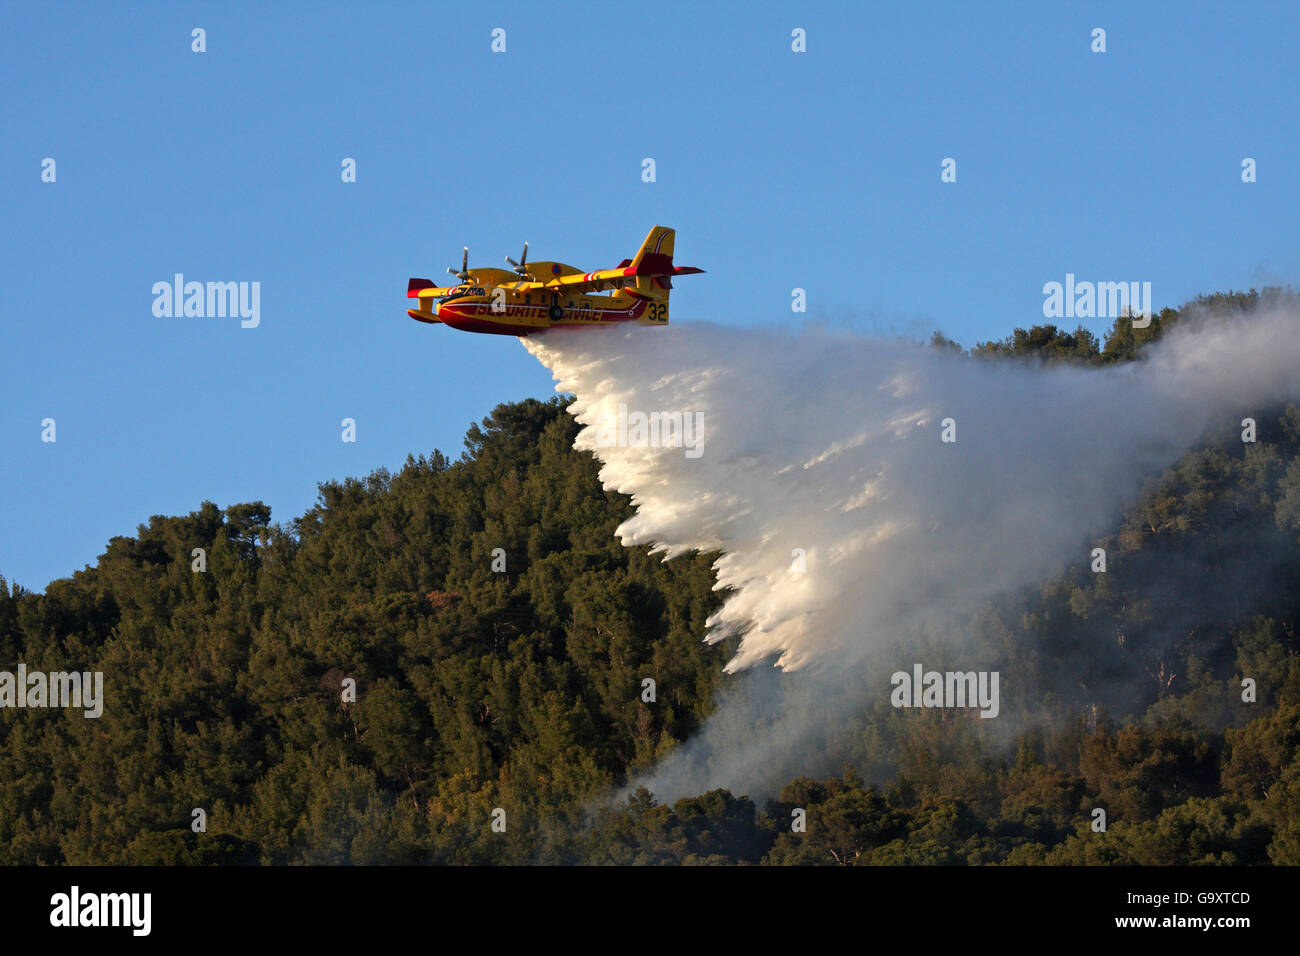 Feuerwehr Flugzeug Wasser vom Mittelmeer gesammelt Wald Feuer zu löschen, Var, Provence, Frankreich, April 2008. Stockfoto